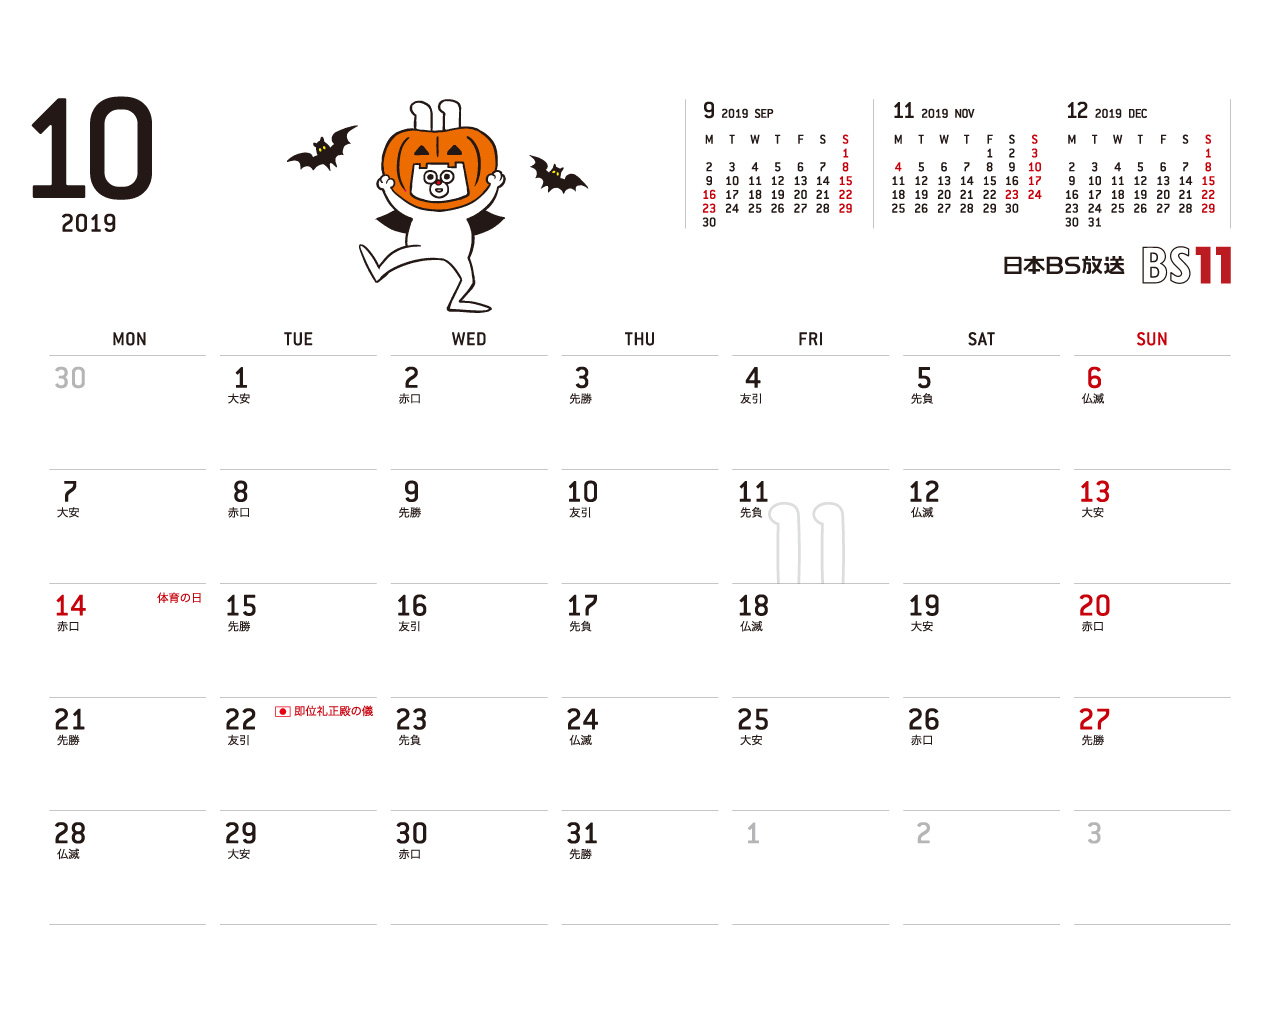 じゅういっちゃんのデジタルカレンダー2019 Bs11 イレブン いつでも無料放送